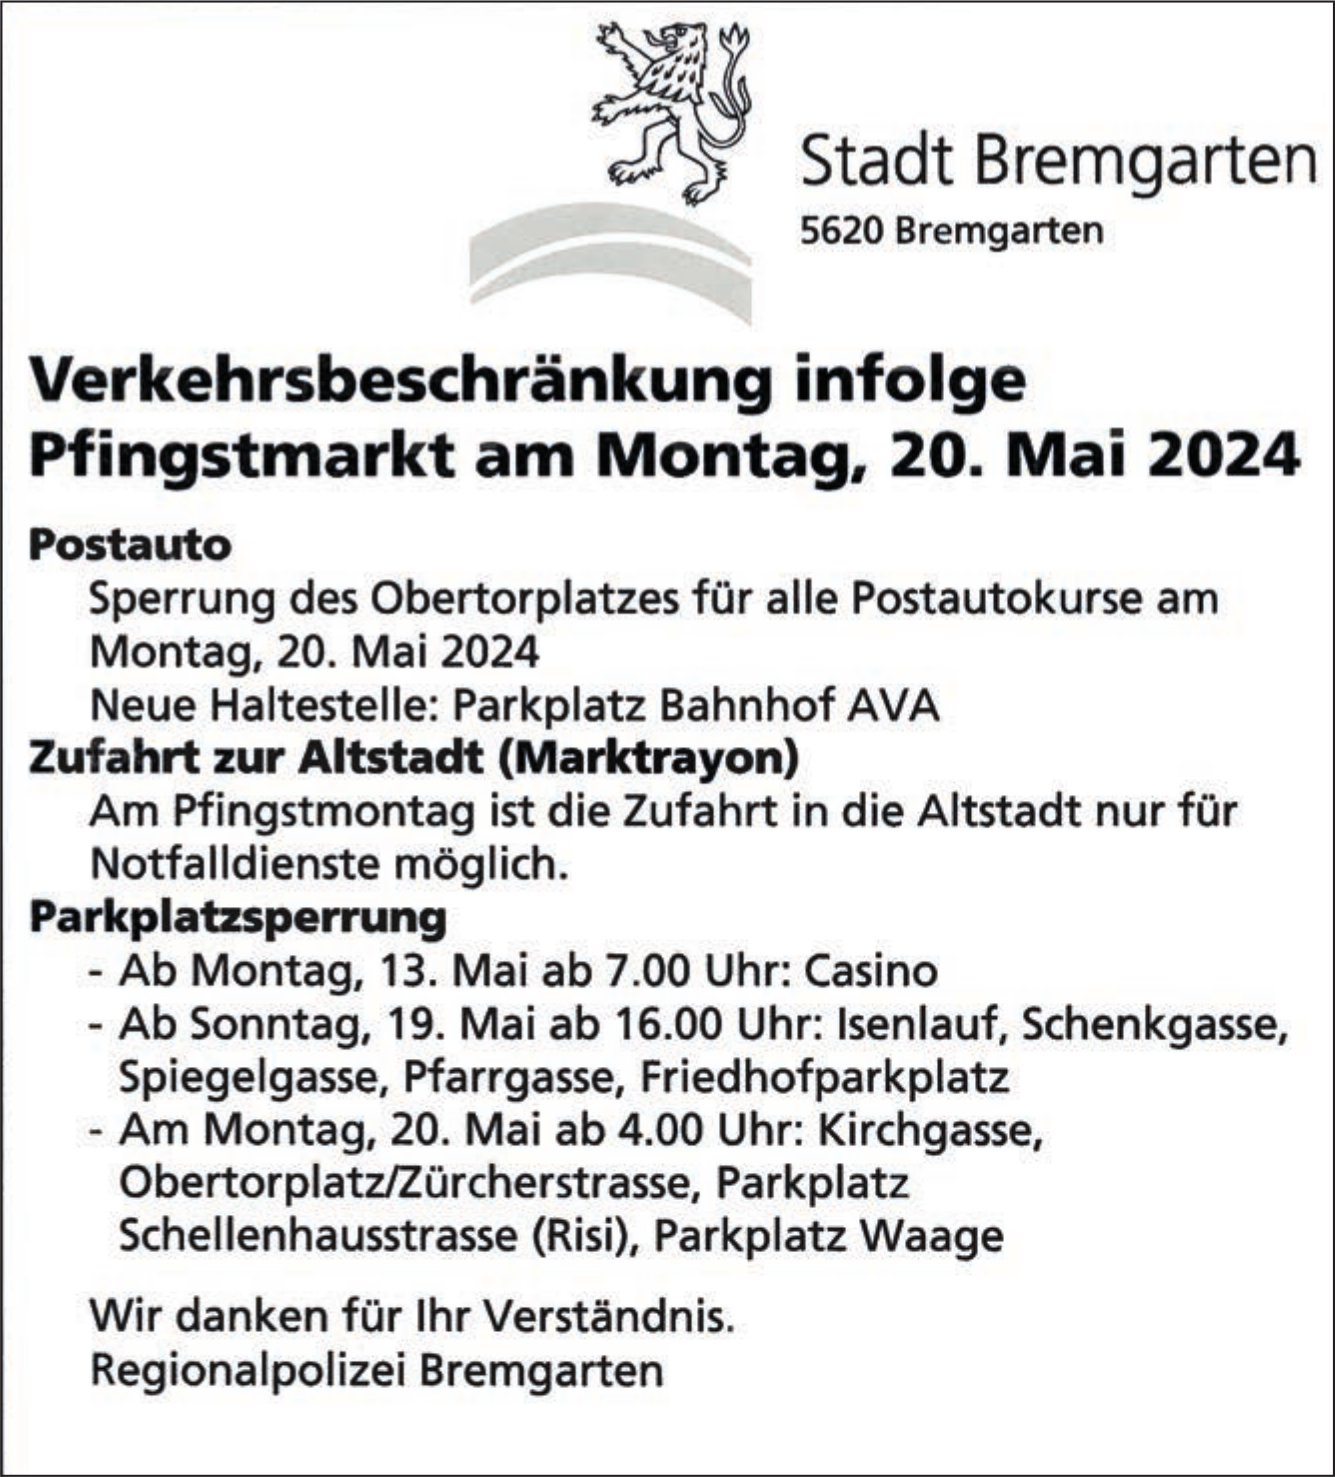 Bremgarten - Verkehrsbeschränkung infolge Pfingstmarkt, 20. Mai